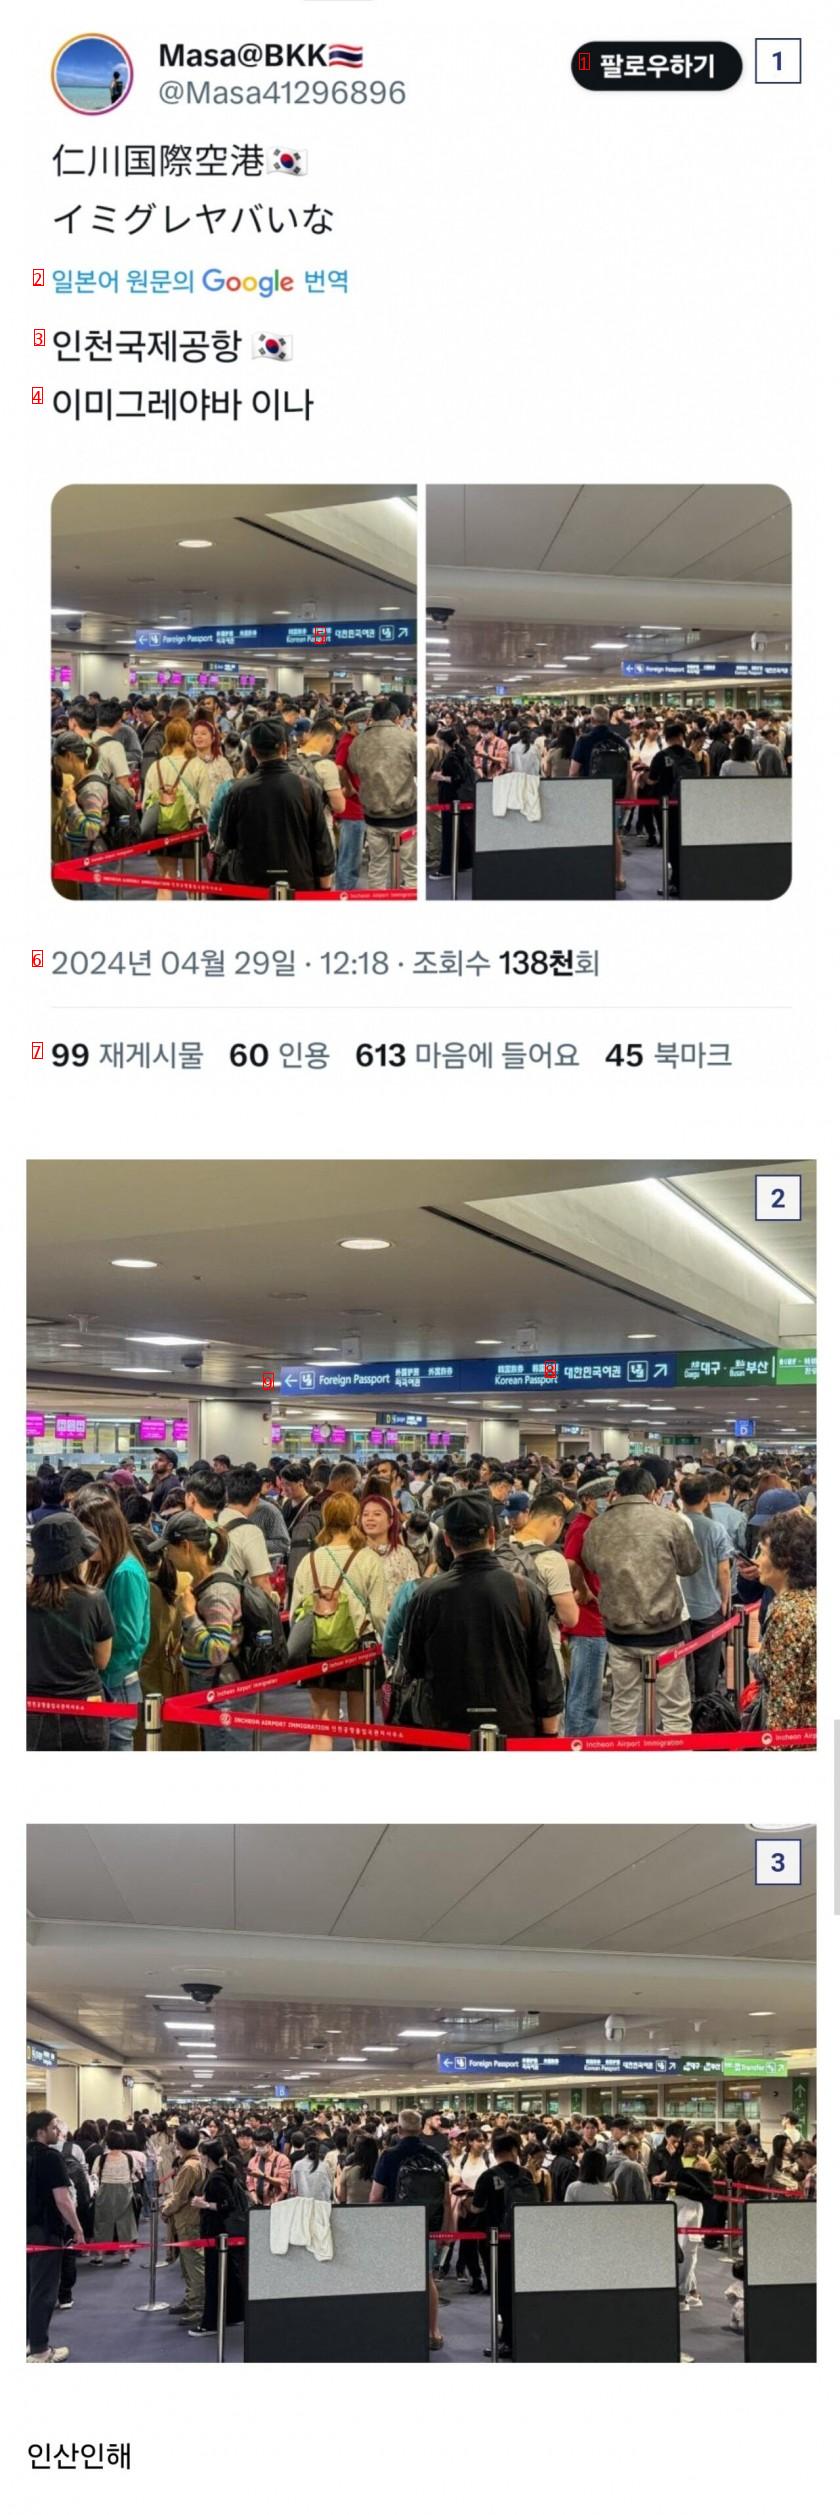 한국인들은 잘 모르는 요즘 인천공항 입국심사 근황